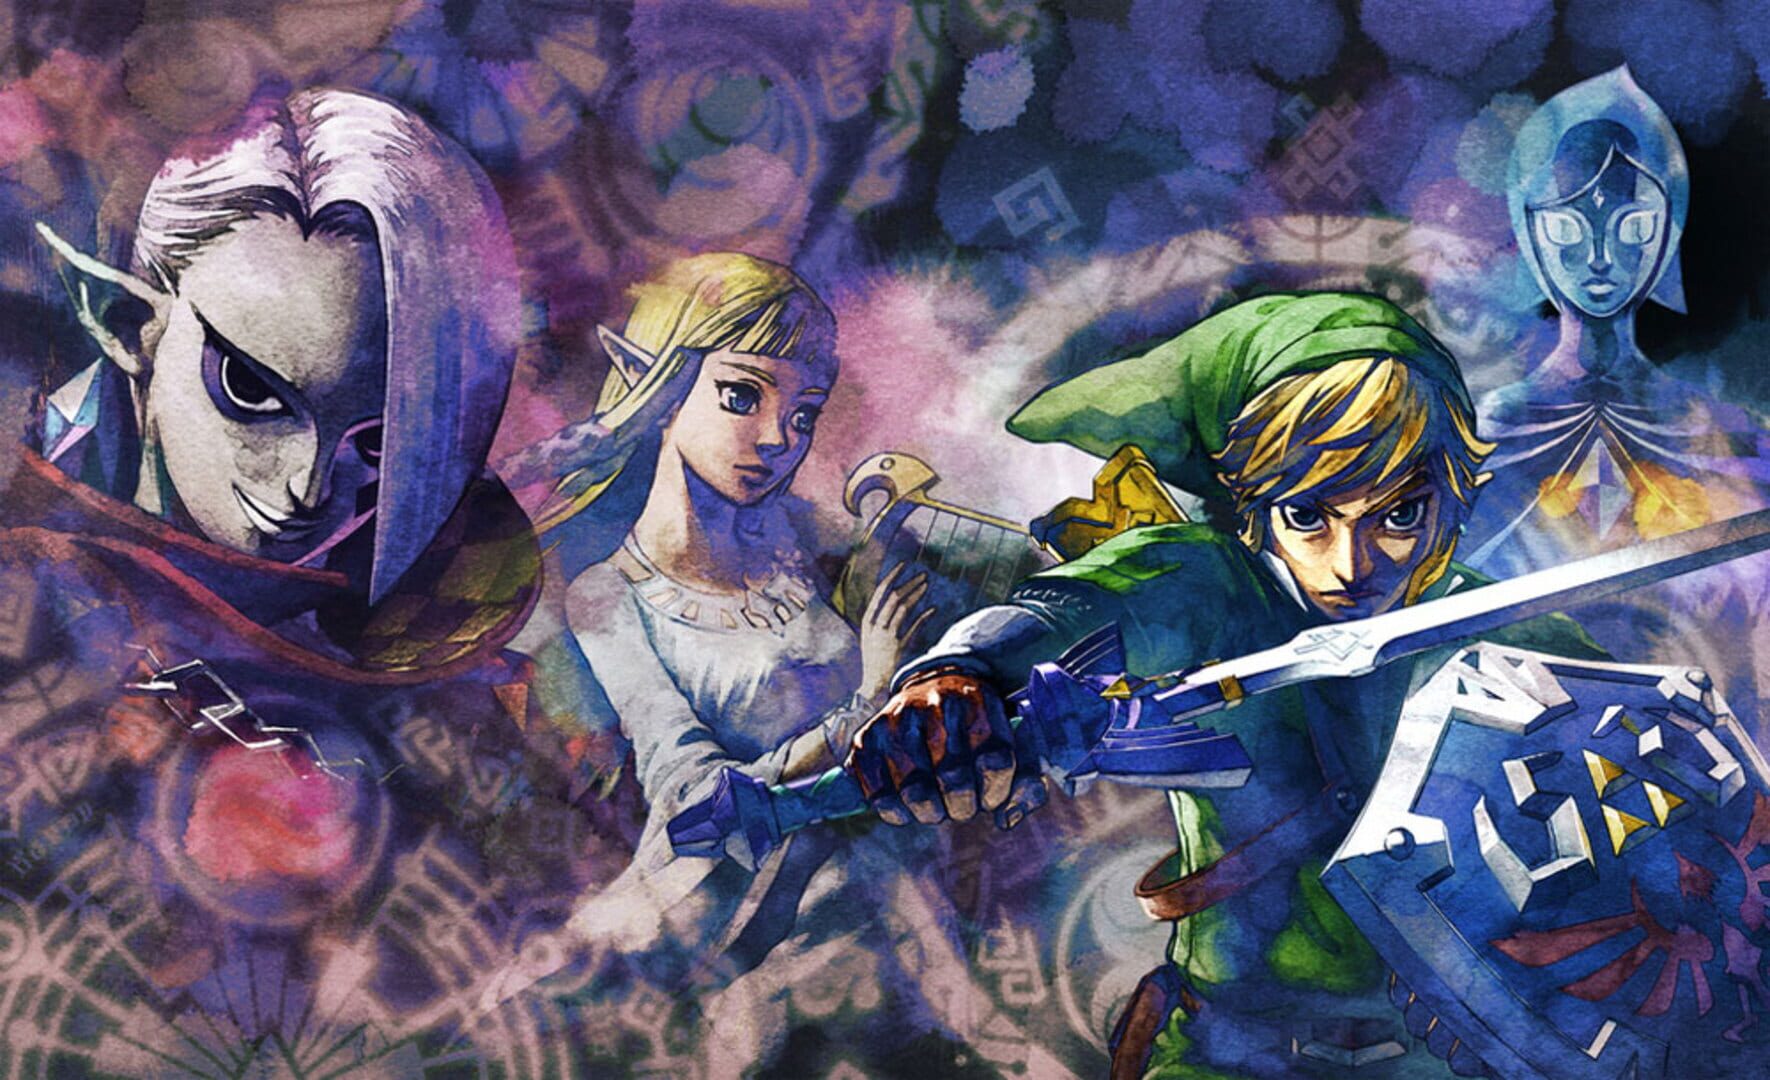 Arte - The Legend of Zelda: Skyward Sword